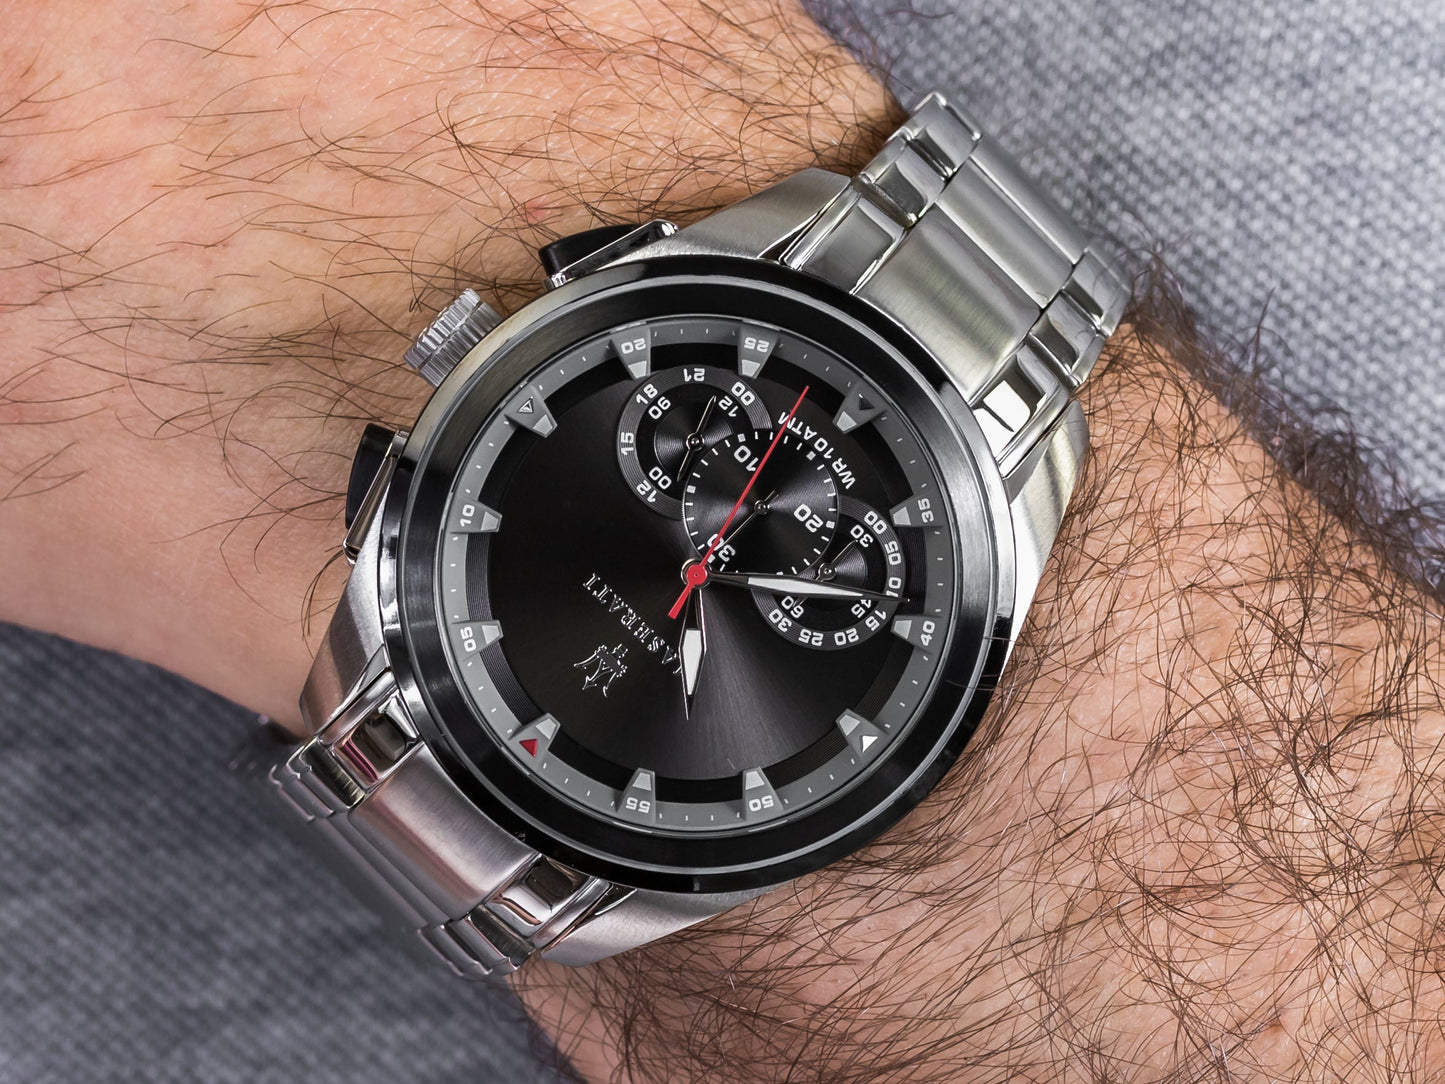 Maserati Analog Black Dial Men's Watch R8873612015